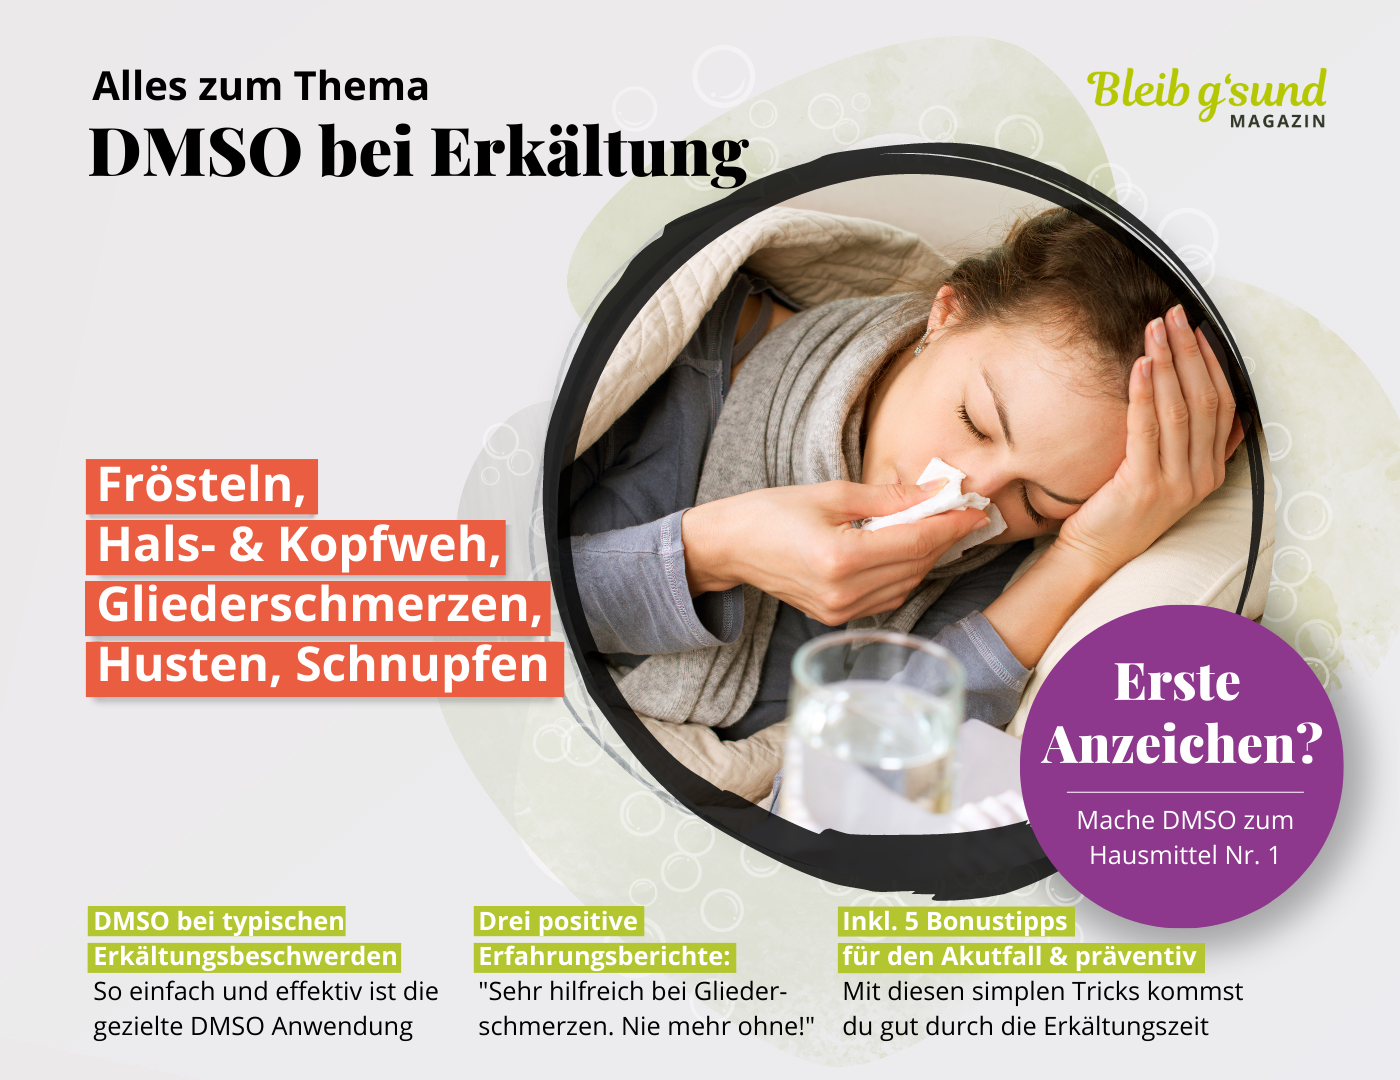 DMSO bei Erkältung - Frösteln, Hals- & Kopfweh, Gliederschmerzen, Husten, Schnupfen